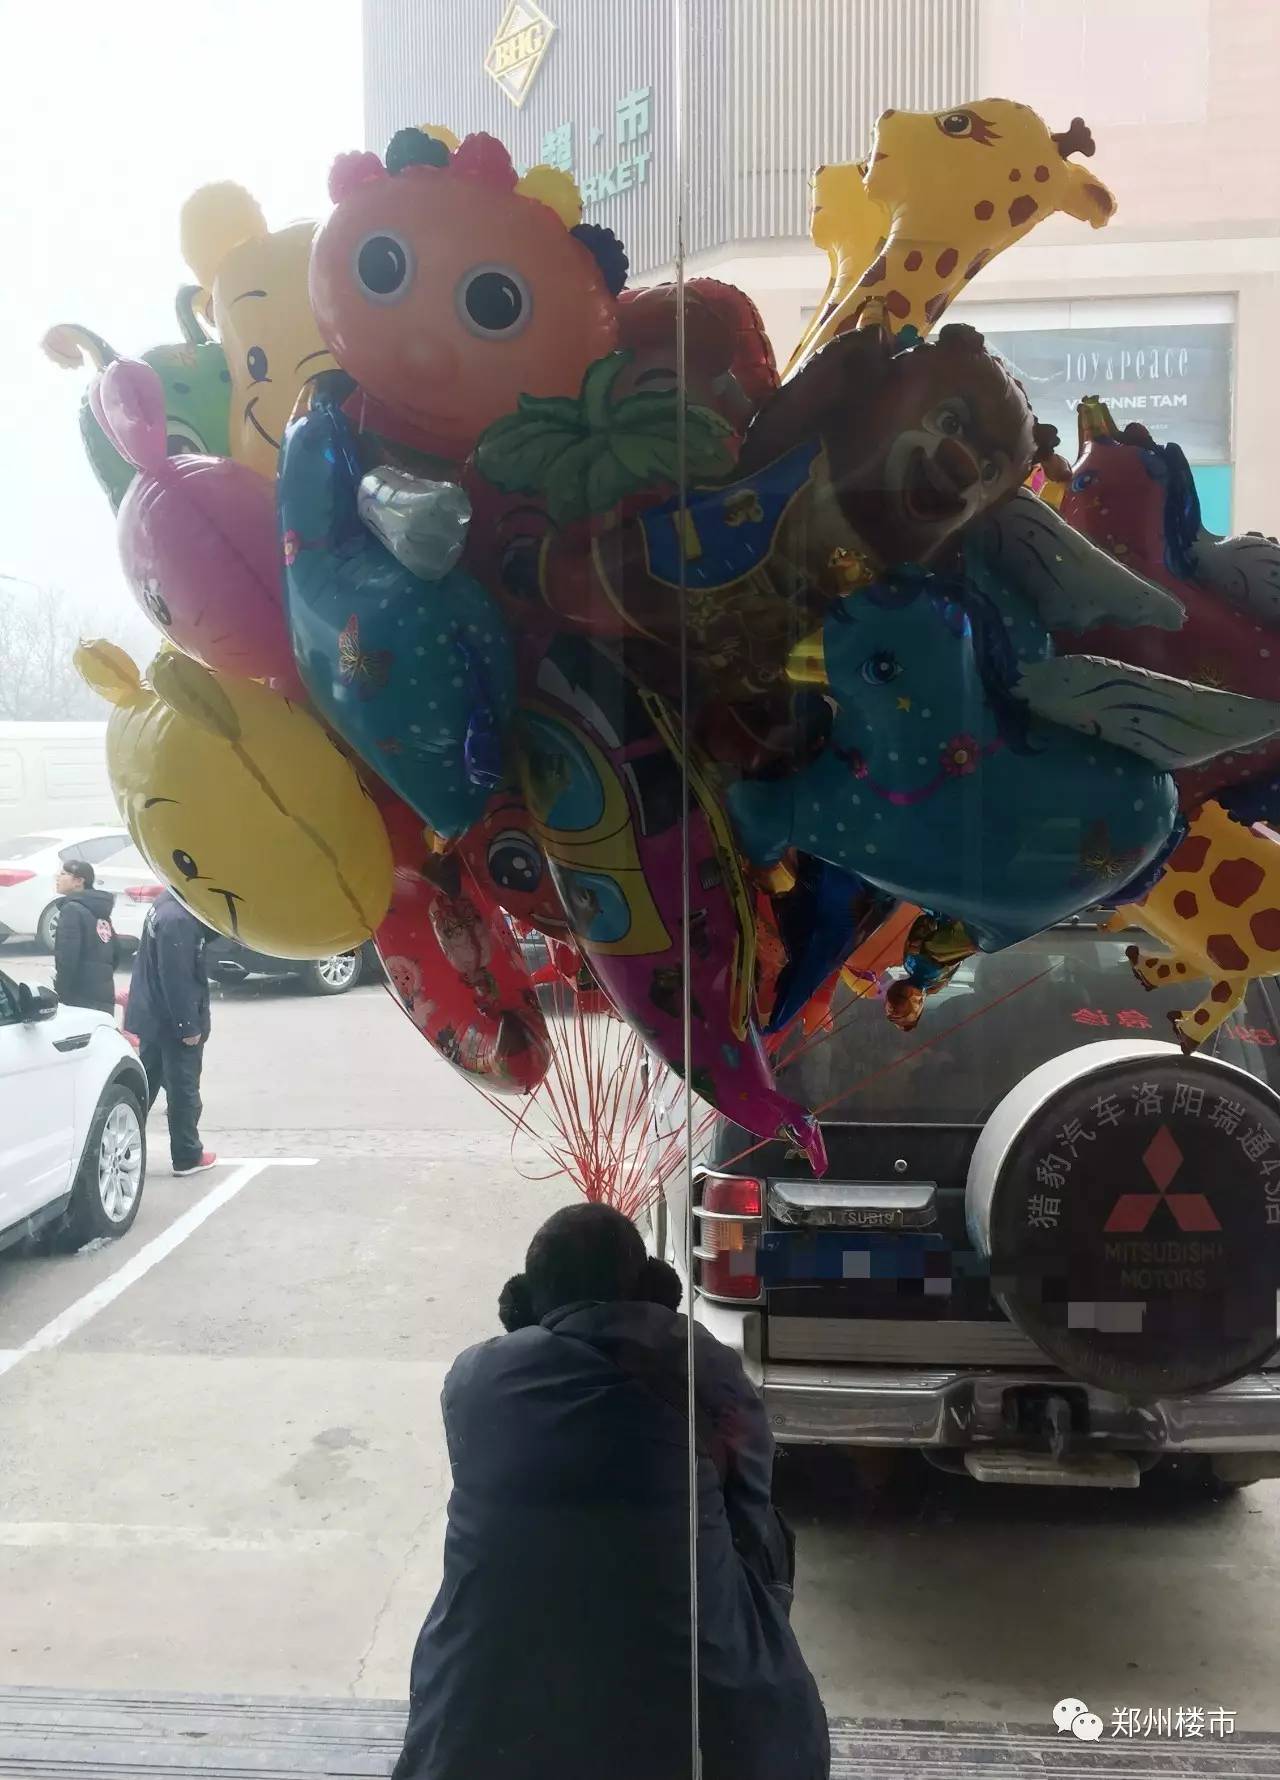 医院门口卖气球的小商贩,希望这些气球能带给孩子们欢乐. ▼